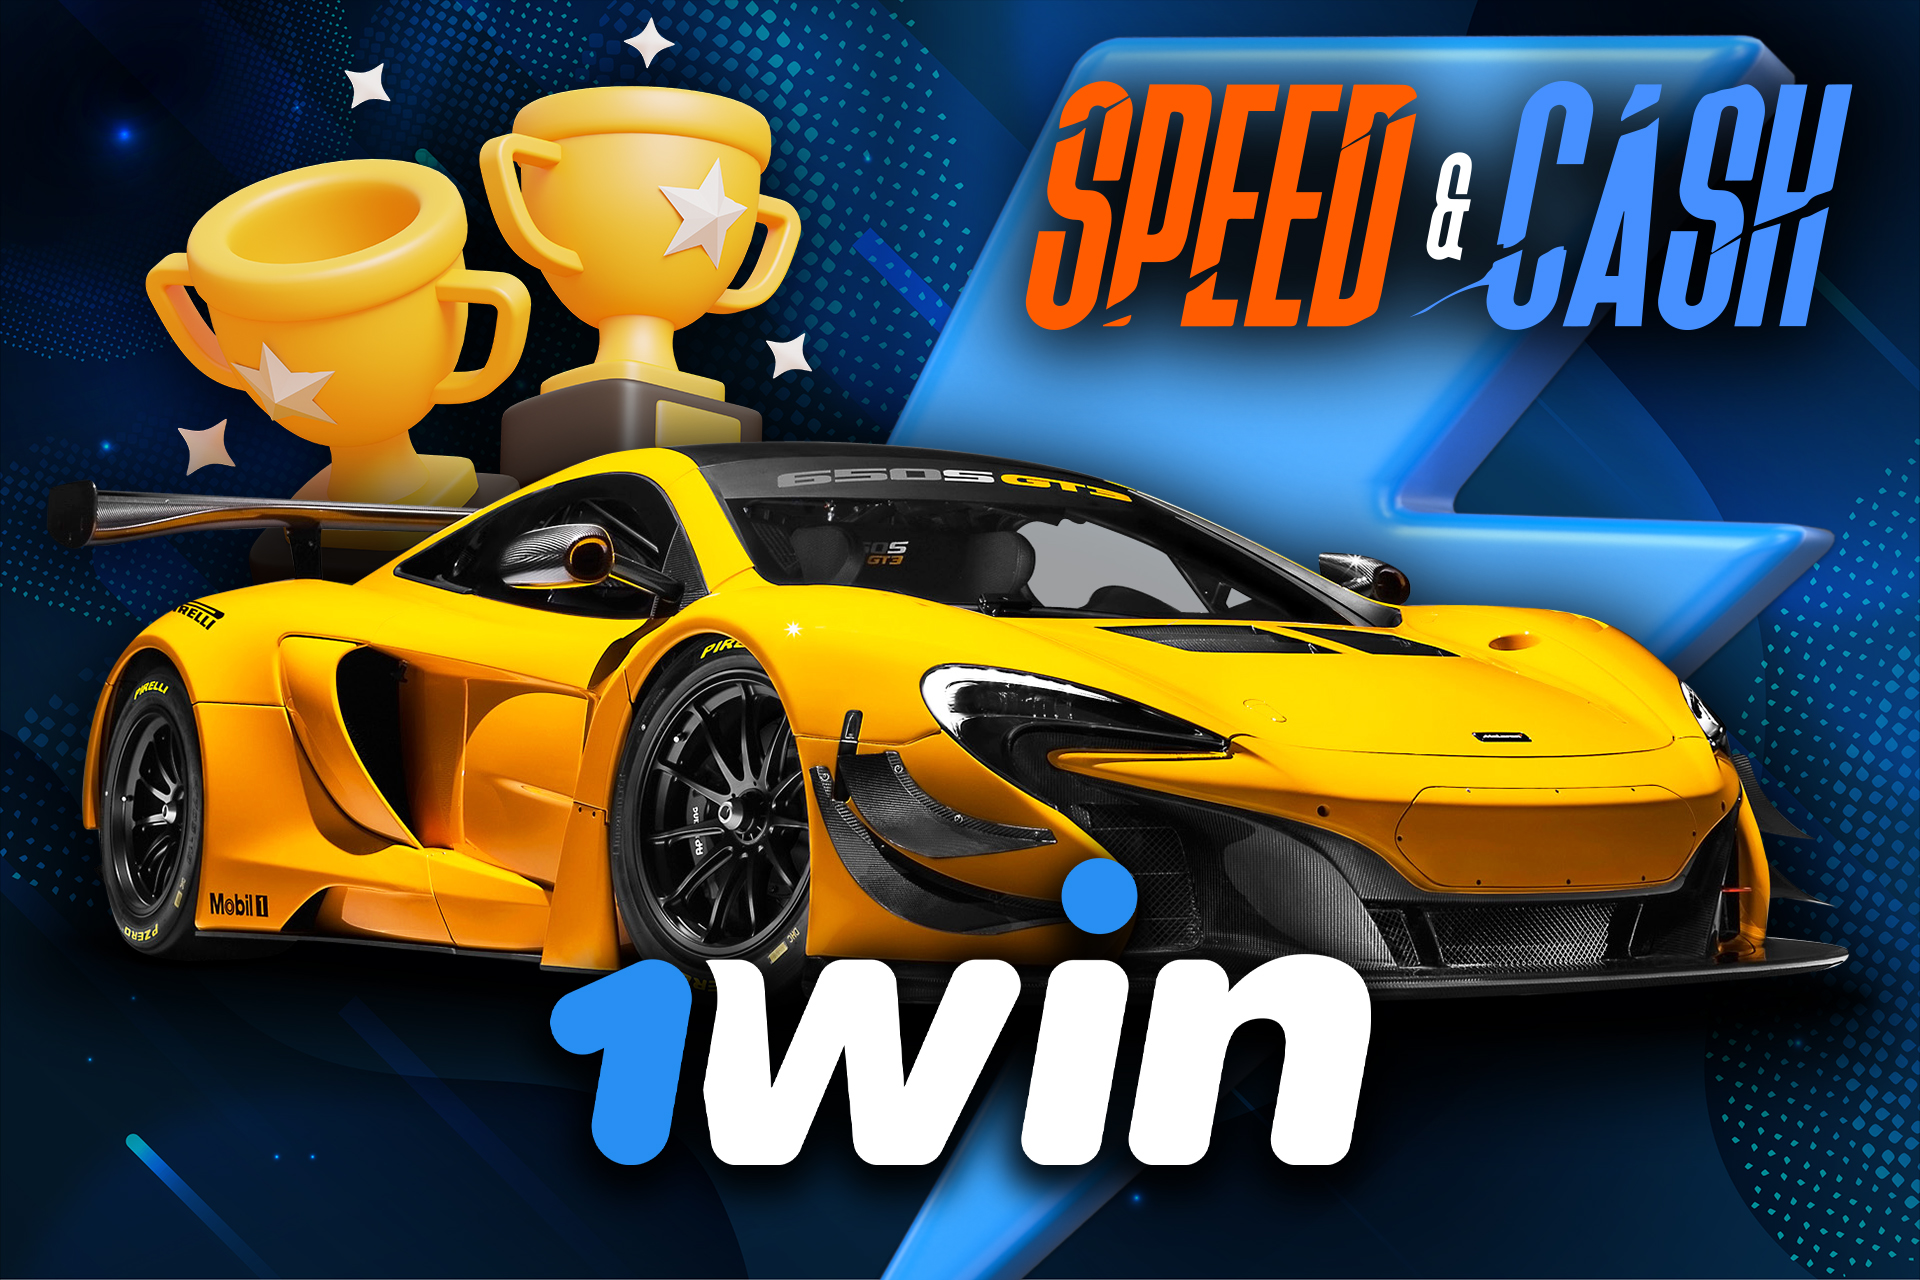 Estas ventajas hacen de Speed and Cash uno de los juegos de velocidad más populares del casino en línea 1win.